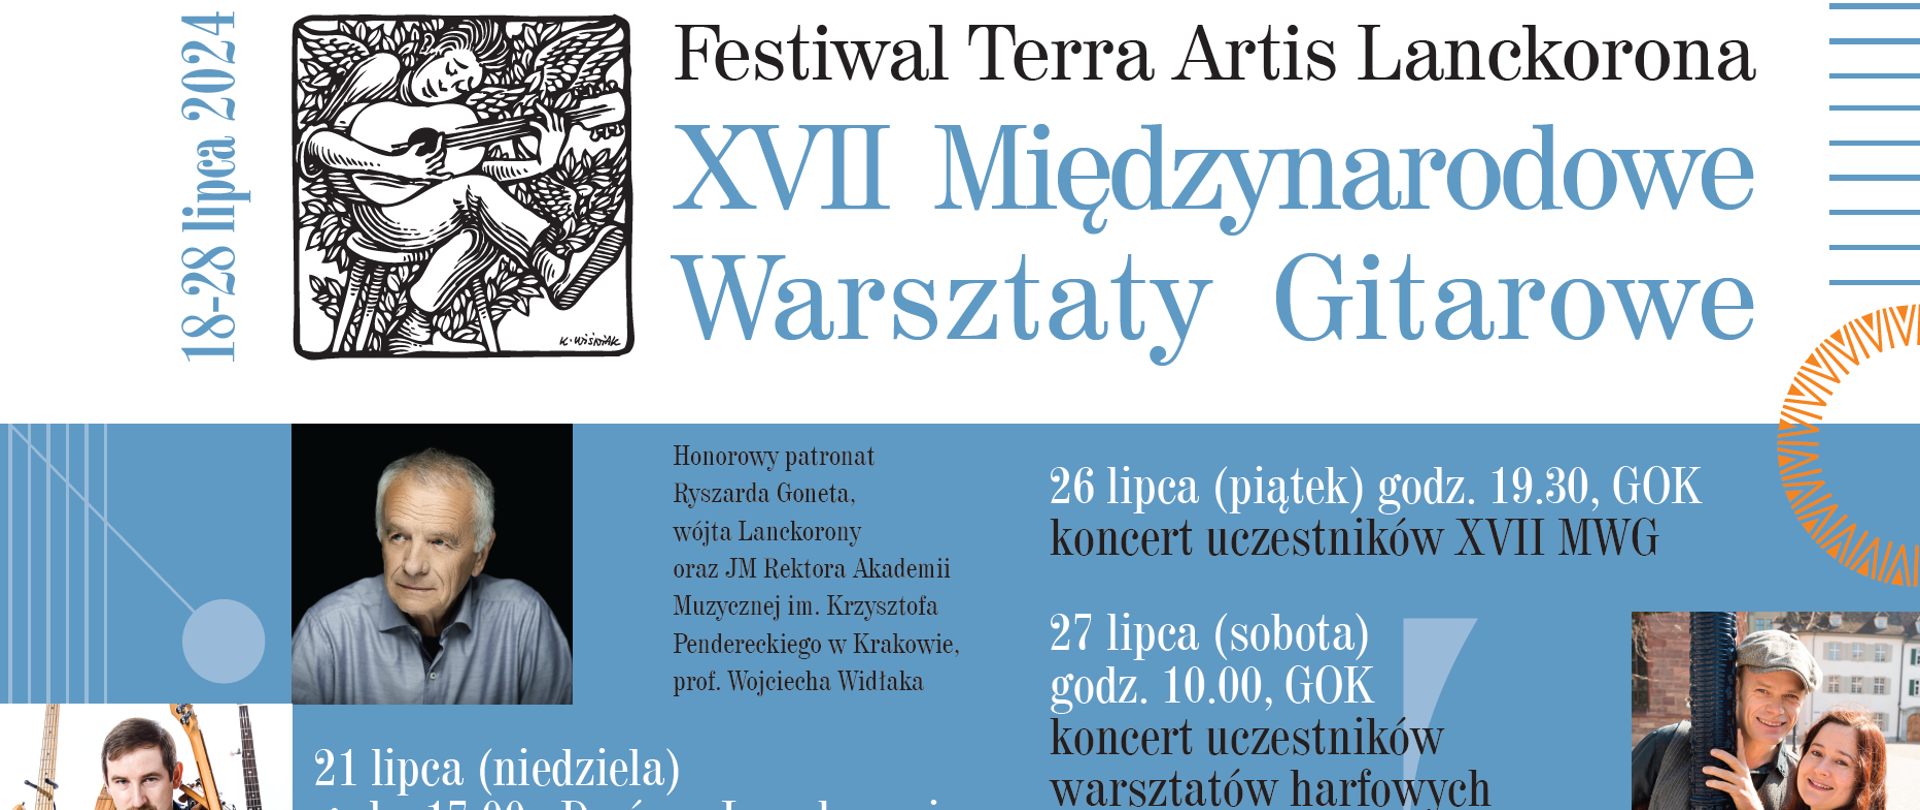 XVII Międzynarodowe Warsztaty Gitarowe i Festiwal Terra Artis w Lanckoronie